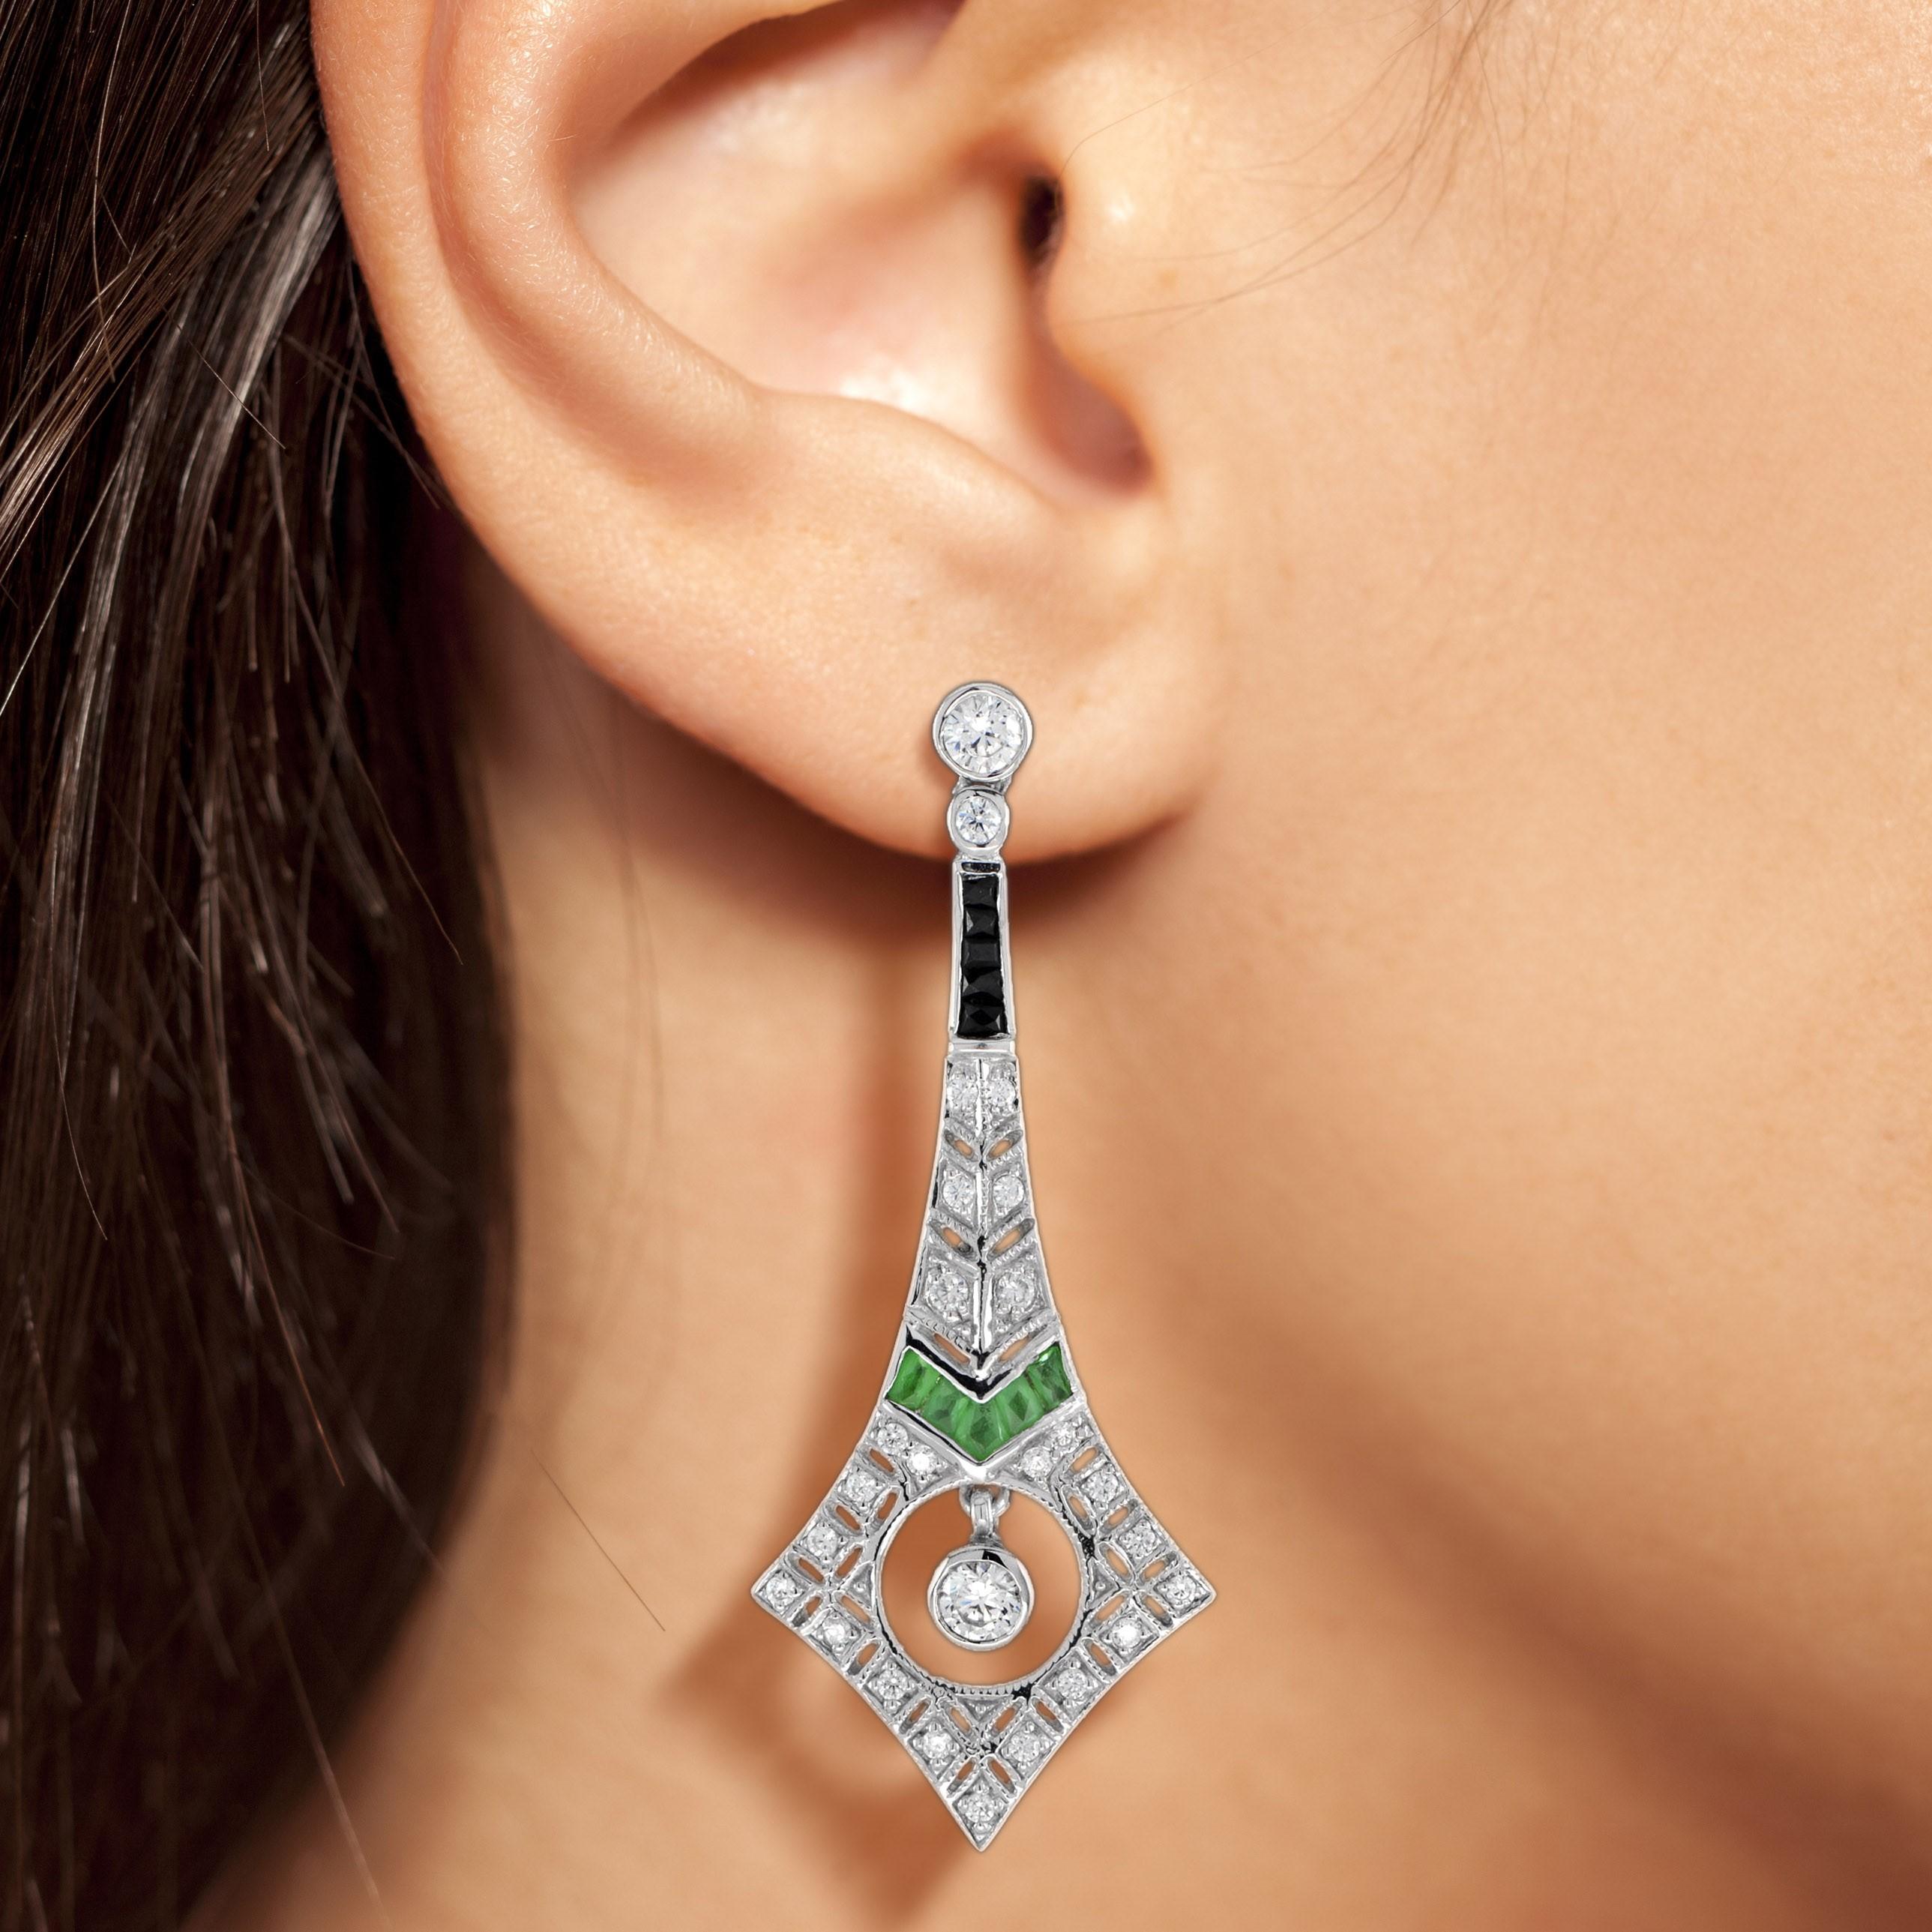 Ces boucles d'oreilles pendantes en or blanc 18 carats, inspirées de l'Art déco et composées de diamants, d'émeraudes et d'onyx, sont d'une luxueuse décadence dont on profitera pendant des années. Chaque boucle d'oreille est ornée d'un total de